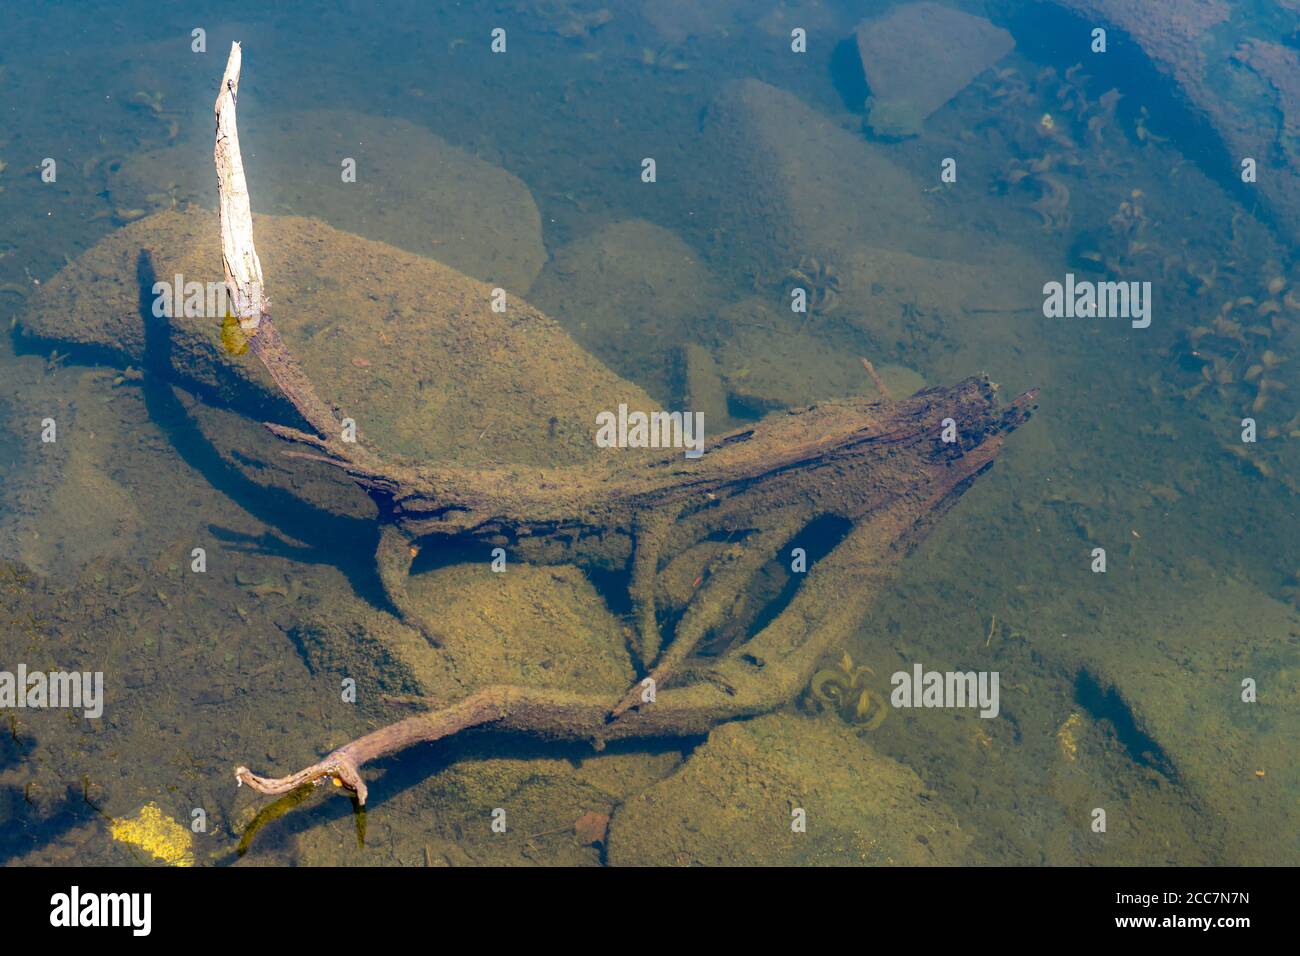 Une branche submergée dans l'eau. La branche, les rochers dans l'eau et le fond du lac sont recouverts d'algues vertes sales. Banque D'Images